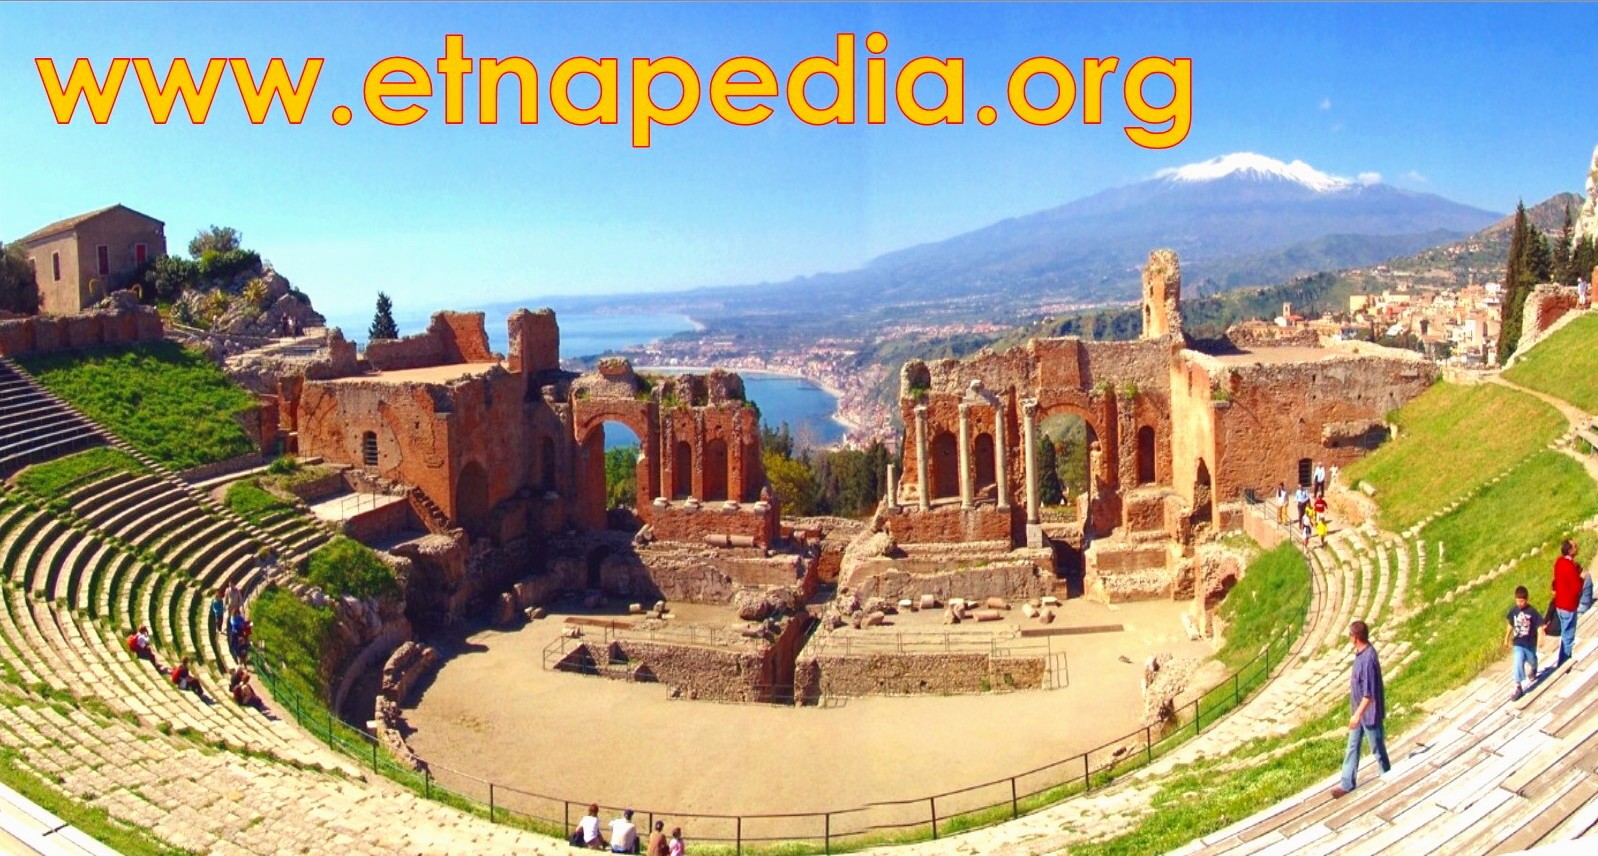 Una “Wikipedia” per l’Etna, Taormina e l’Alcantara